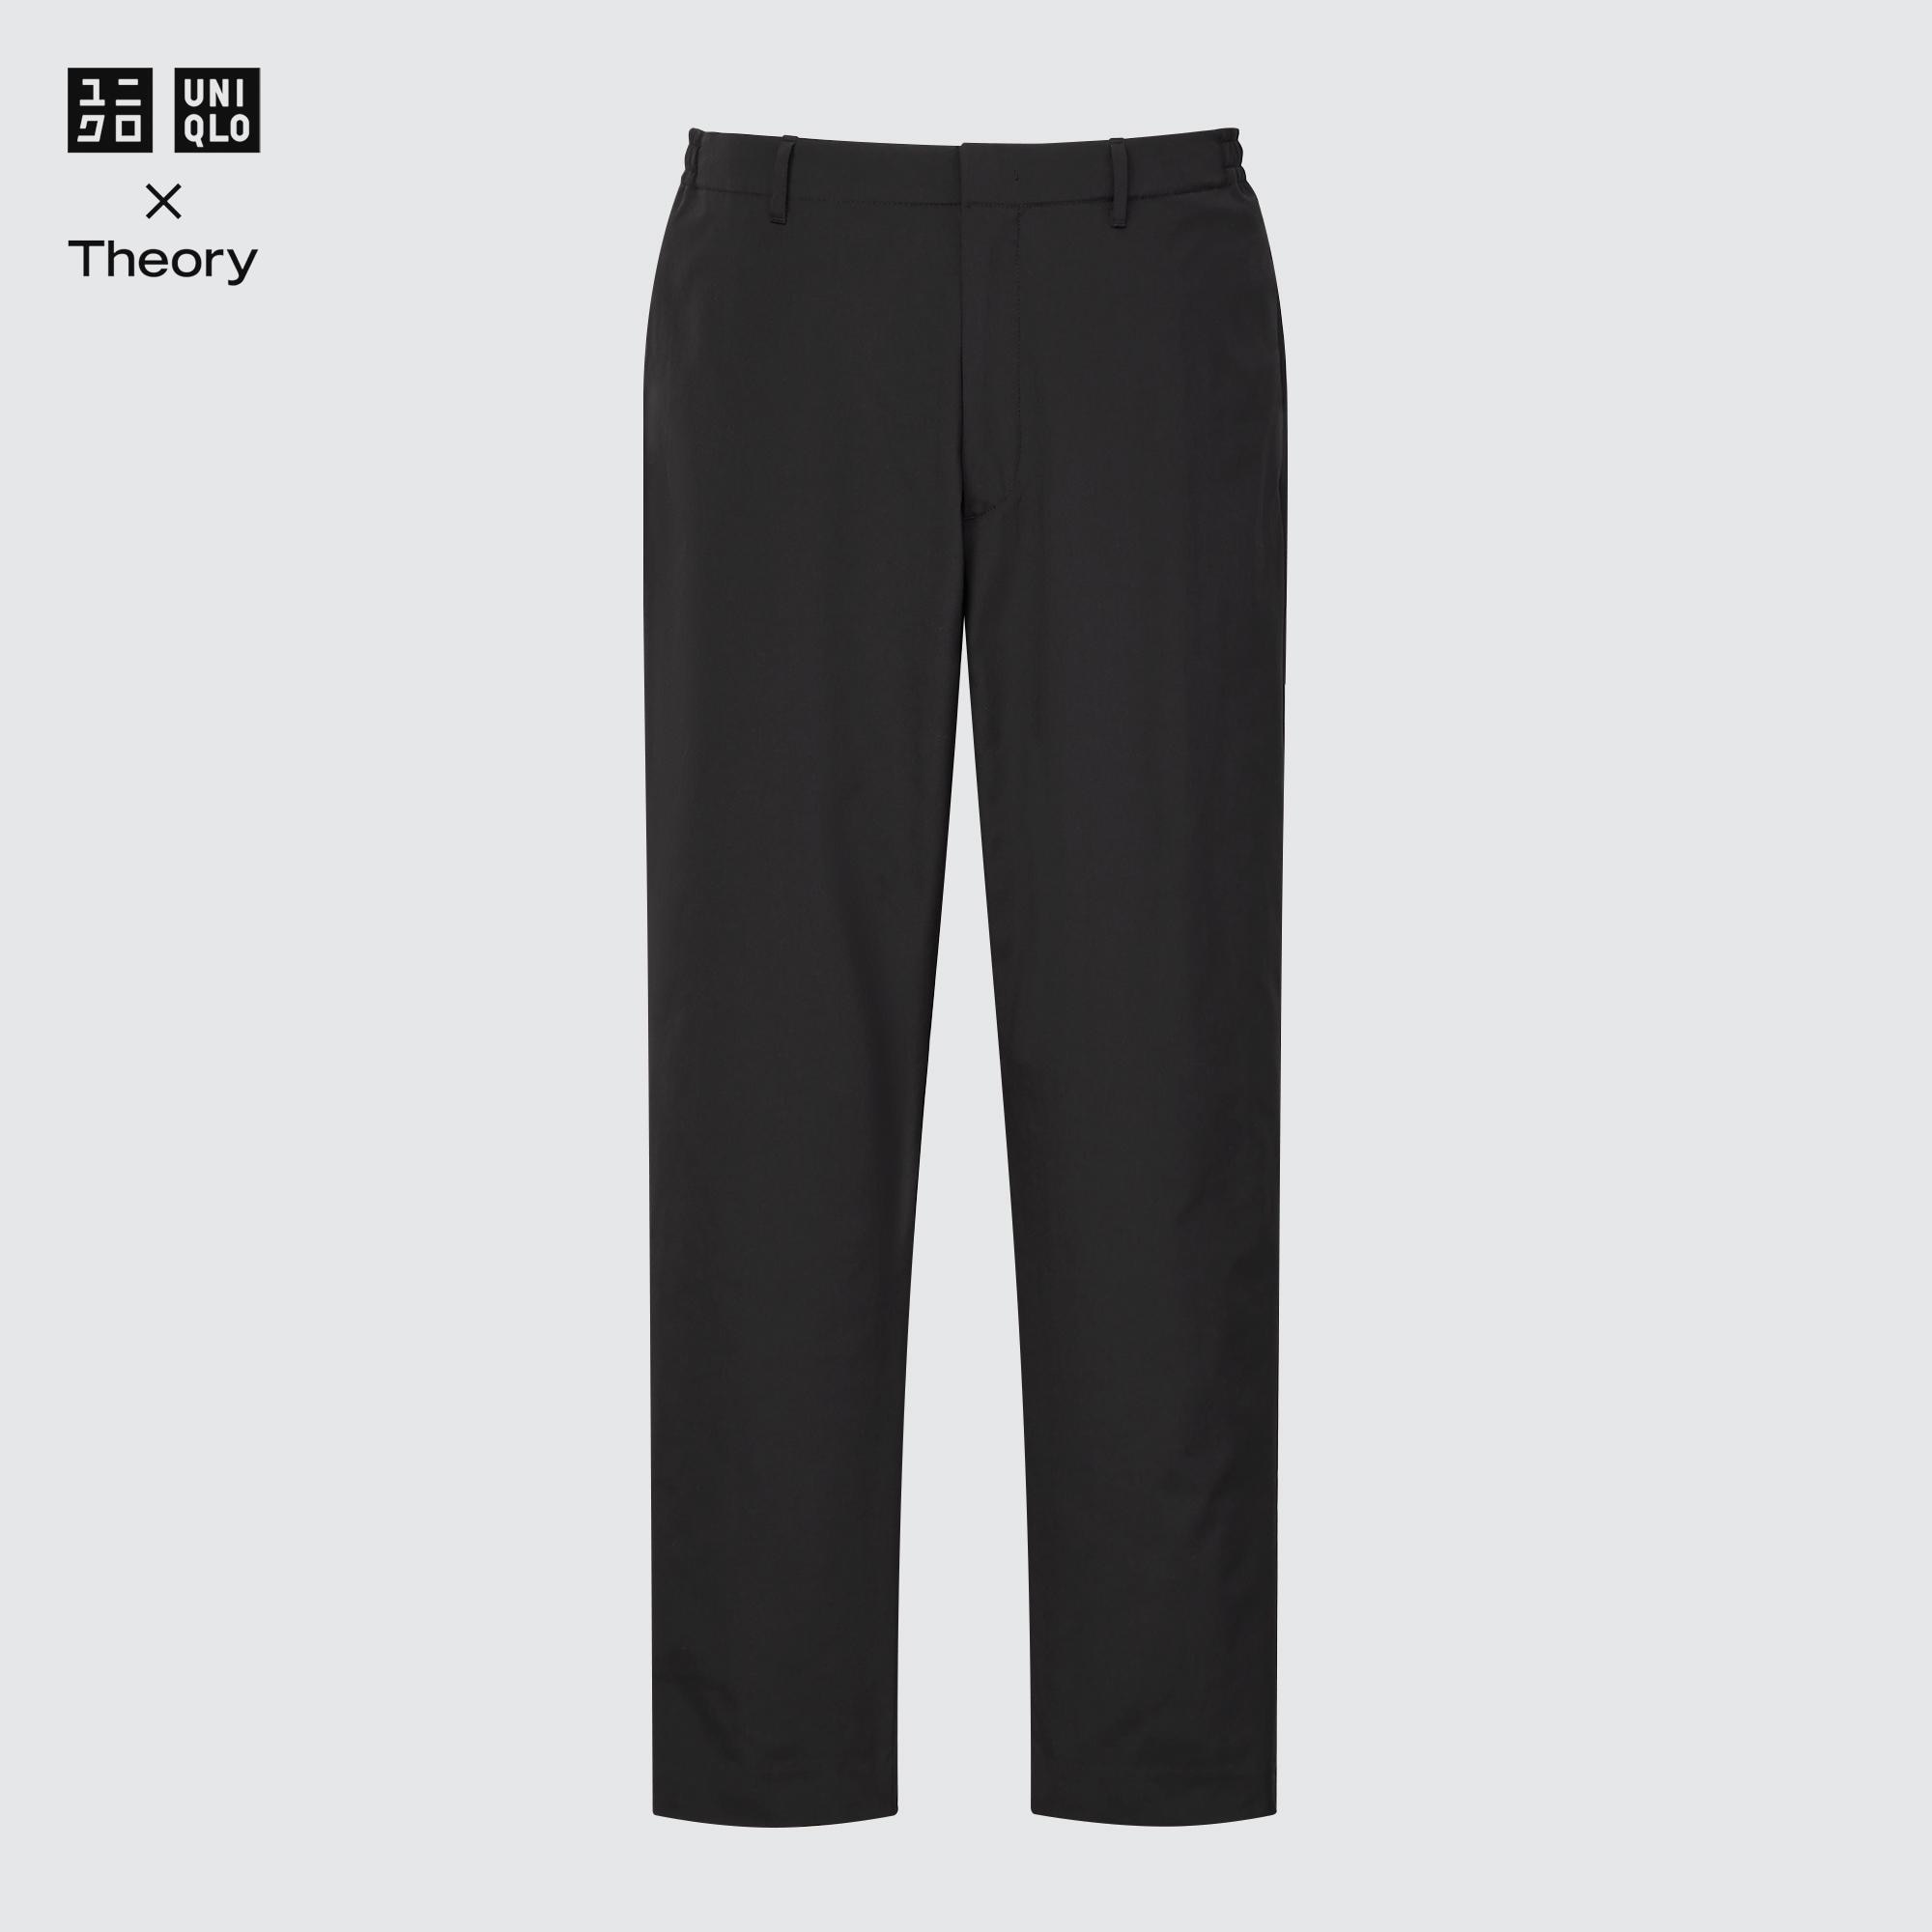 540円 数量限定セール 感動パンツ UNIQLO ブラック 黒 スーツ パンツ メンズ